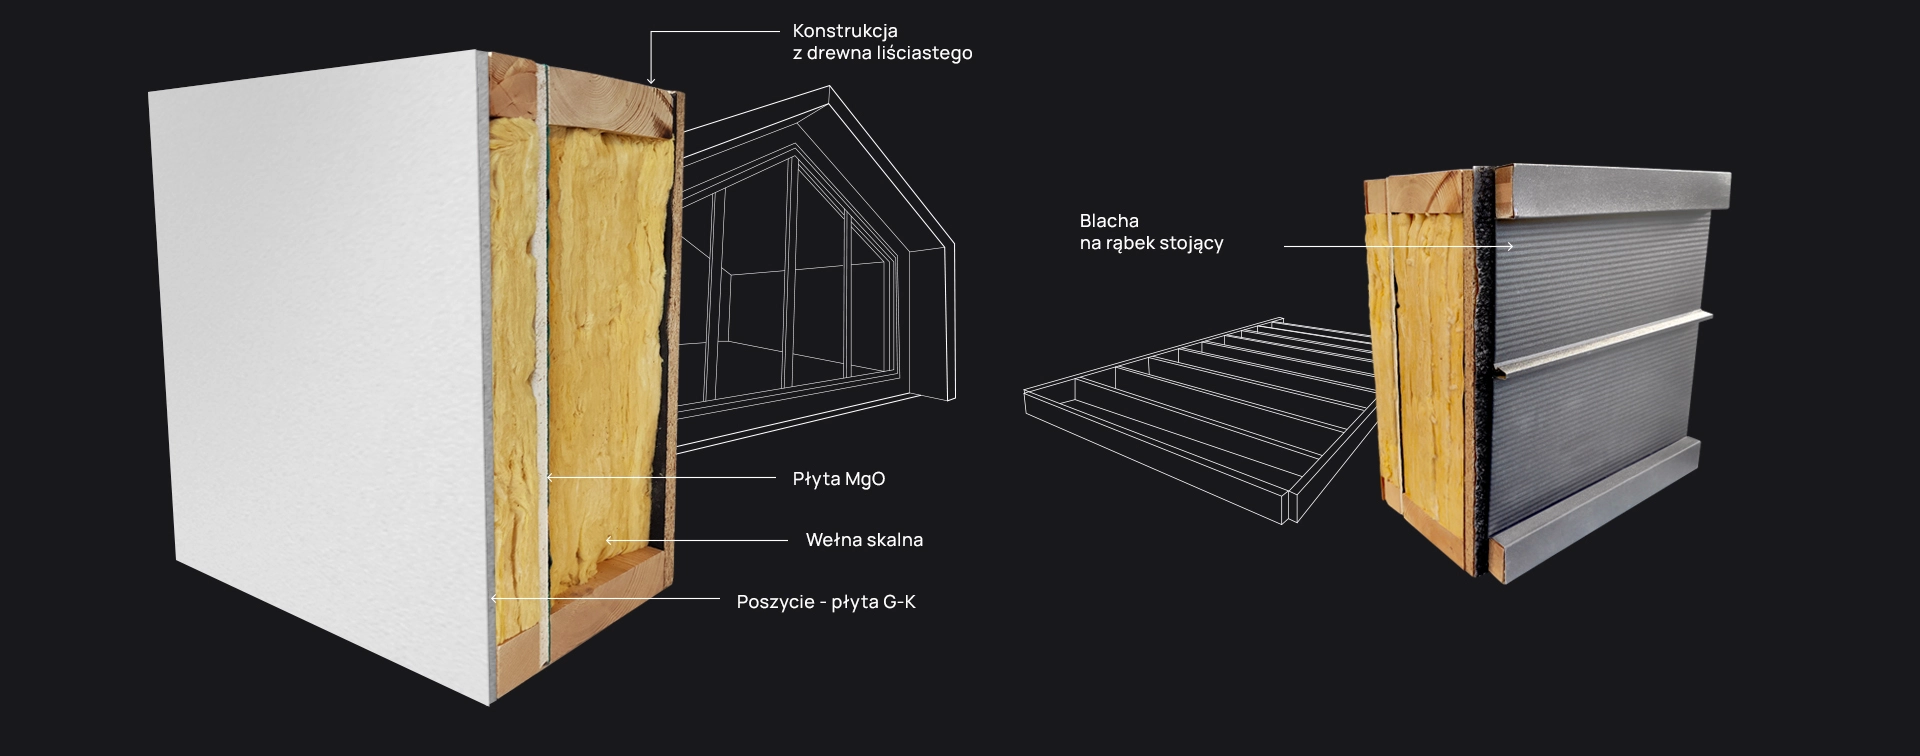 frame of a modular hut